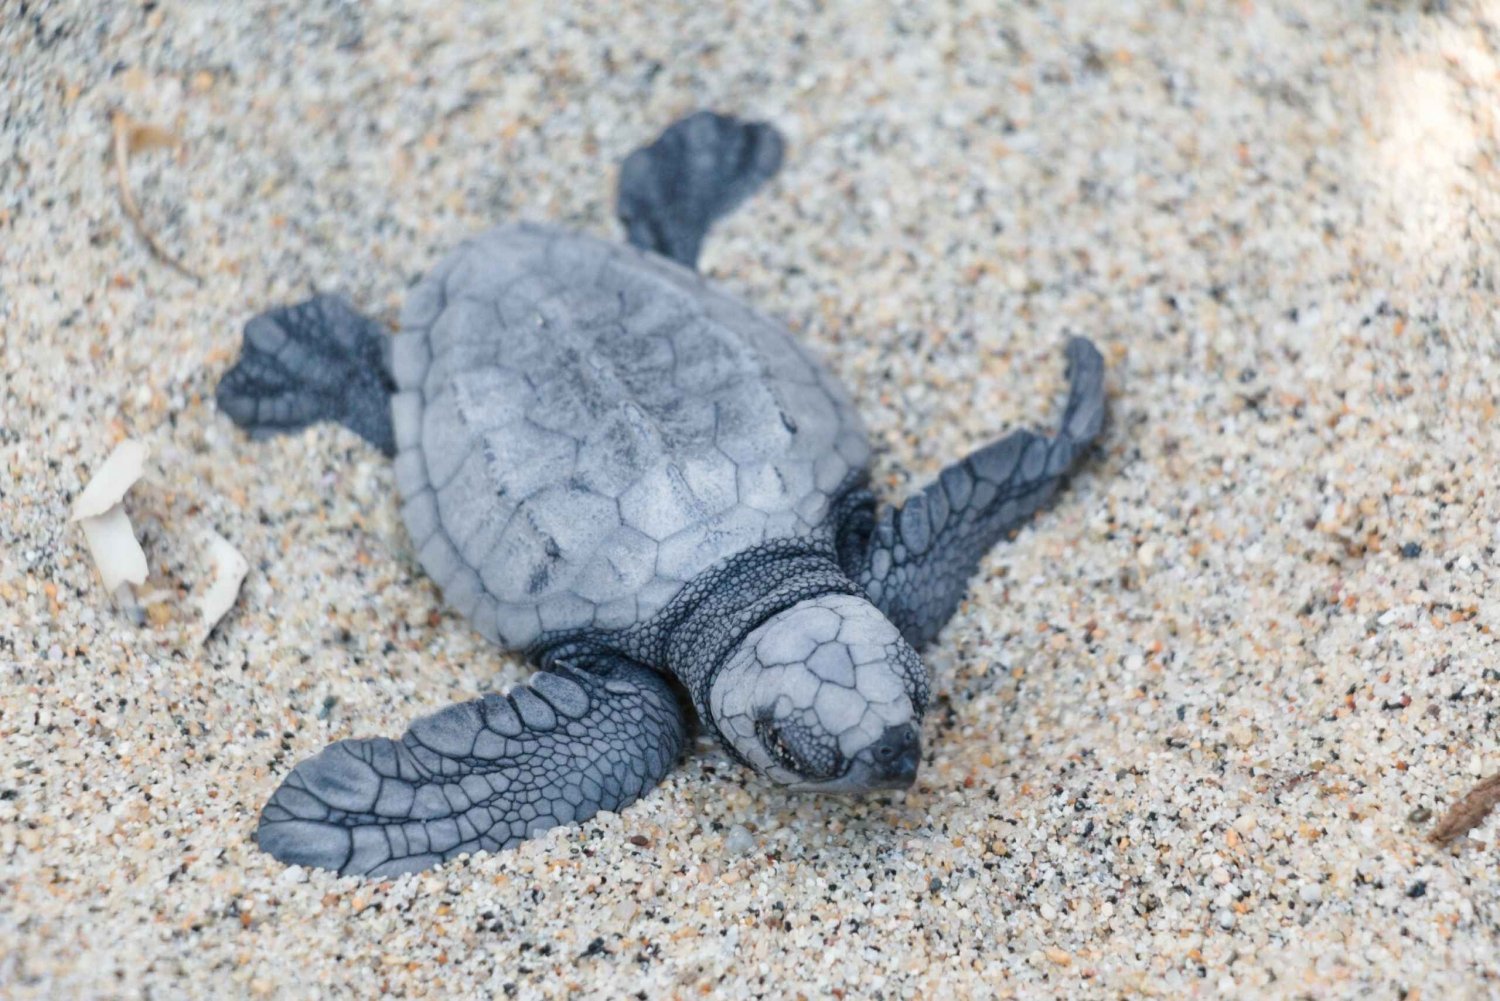 Puerto Escondido: Turtle Release Experience